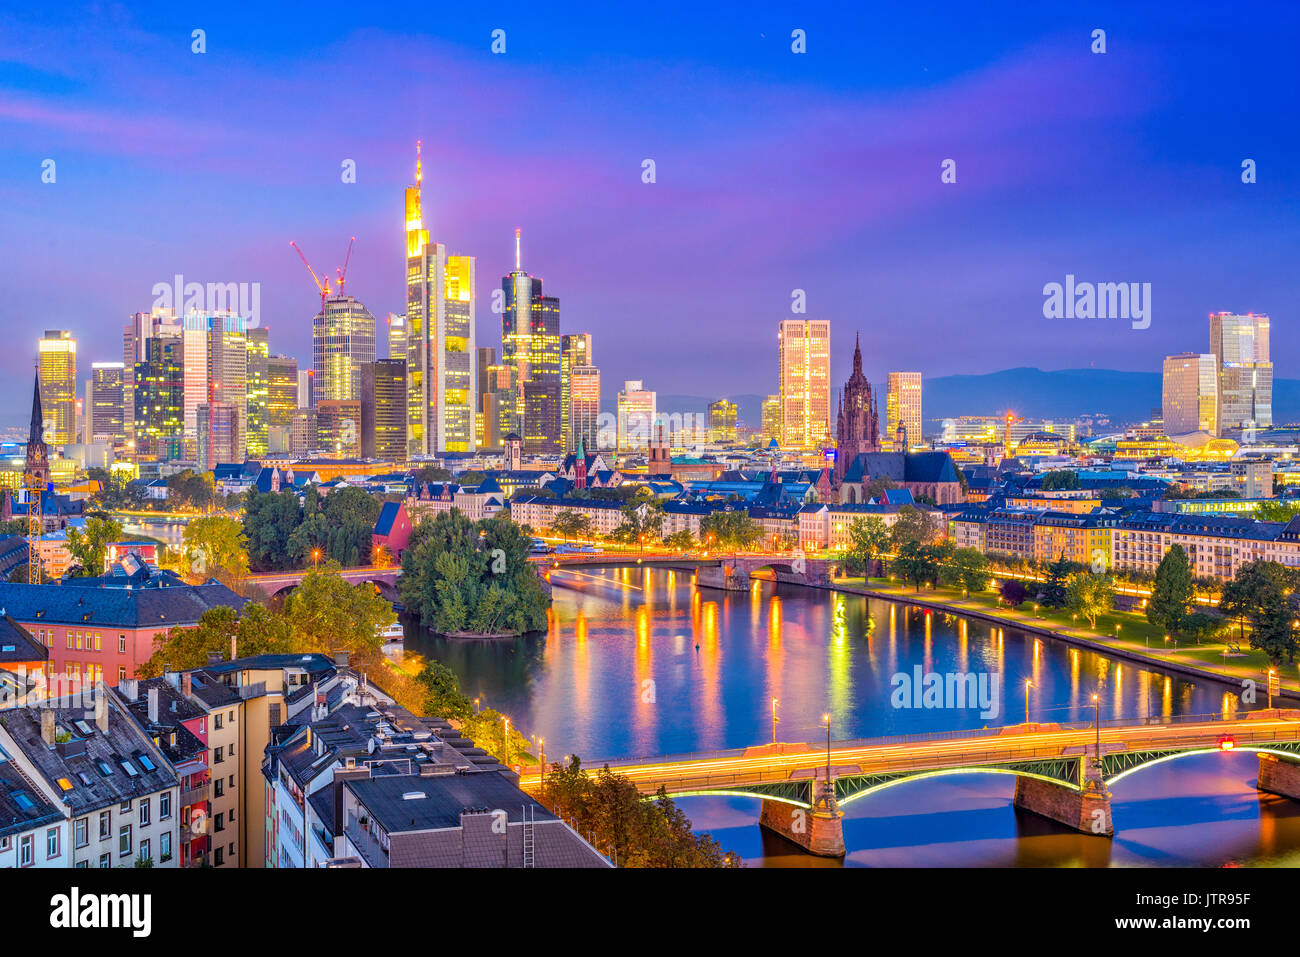 Frankfurt am Main, Germany downtown city skyline. Stock Photo